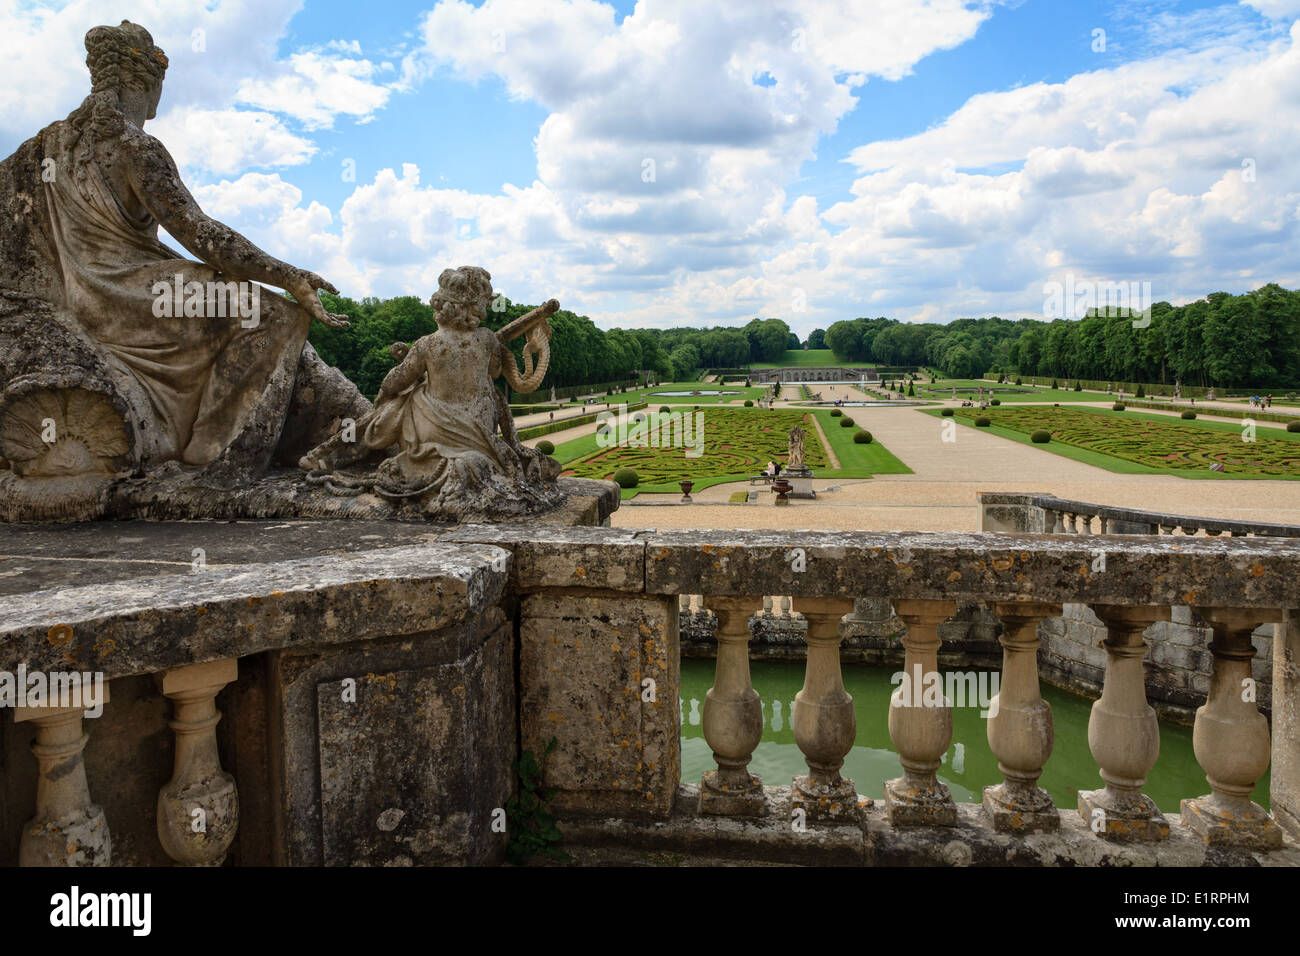 Terrace and gardens of the Château de Vaux-le-Vicomte near Paris Stock Photo